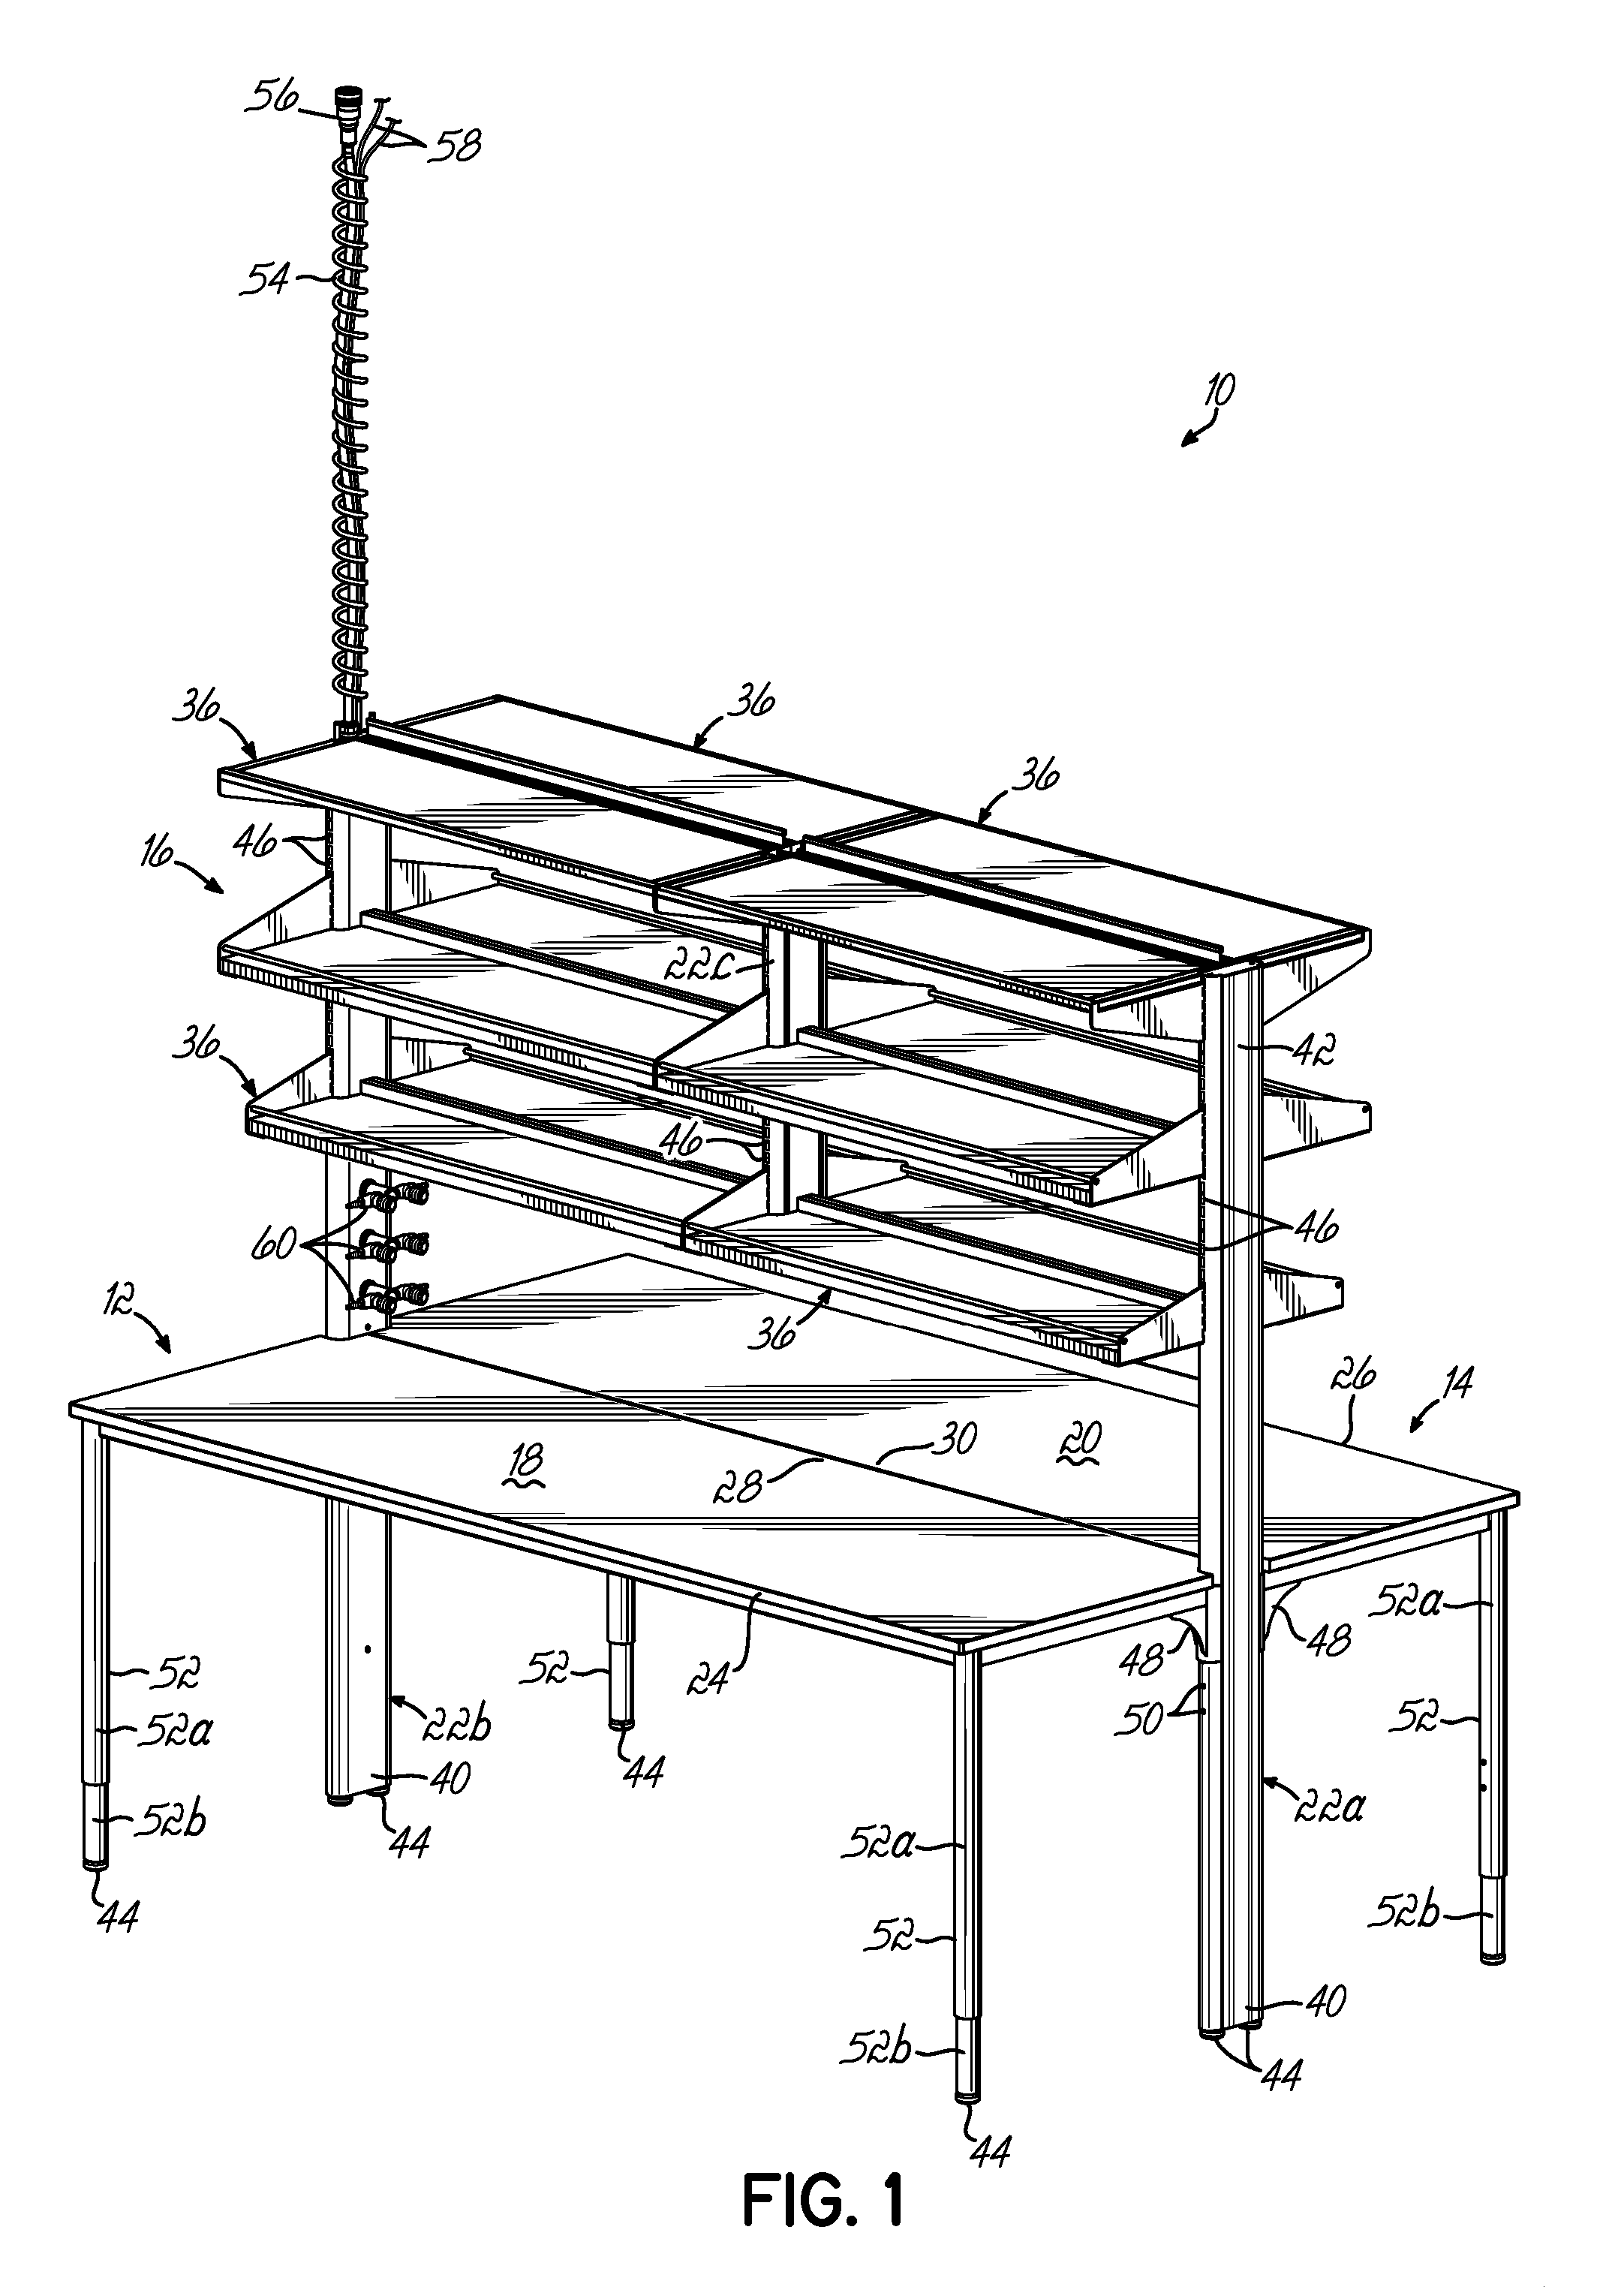 Modular furniture system